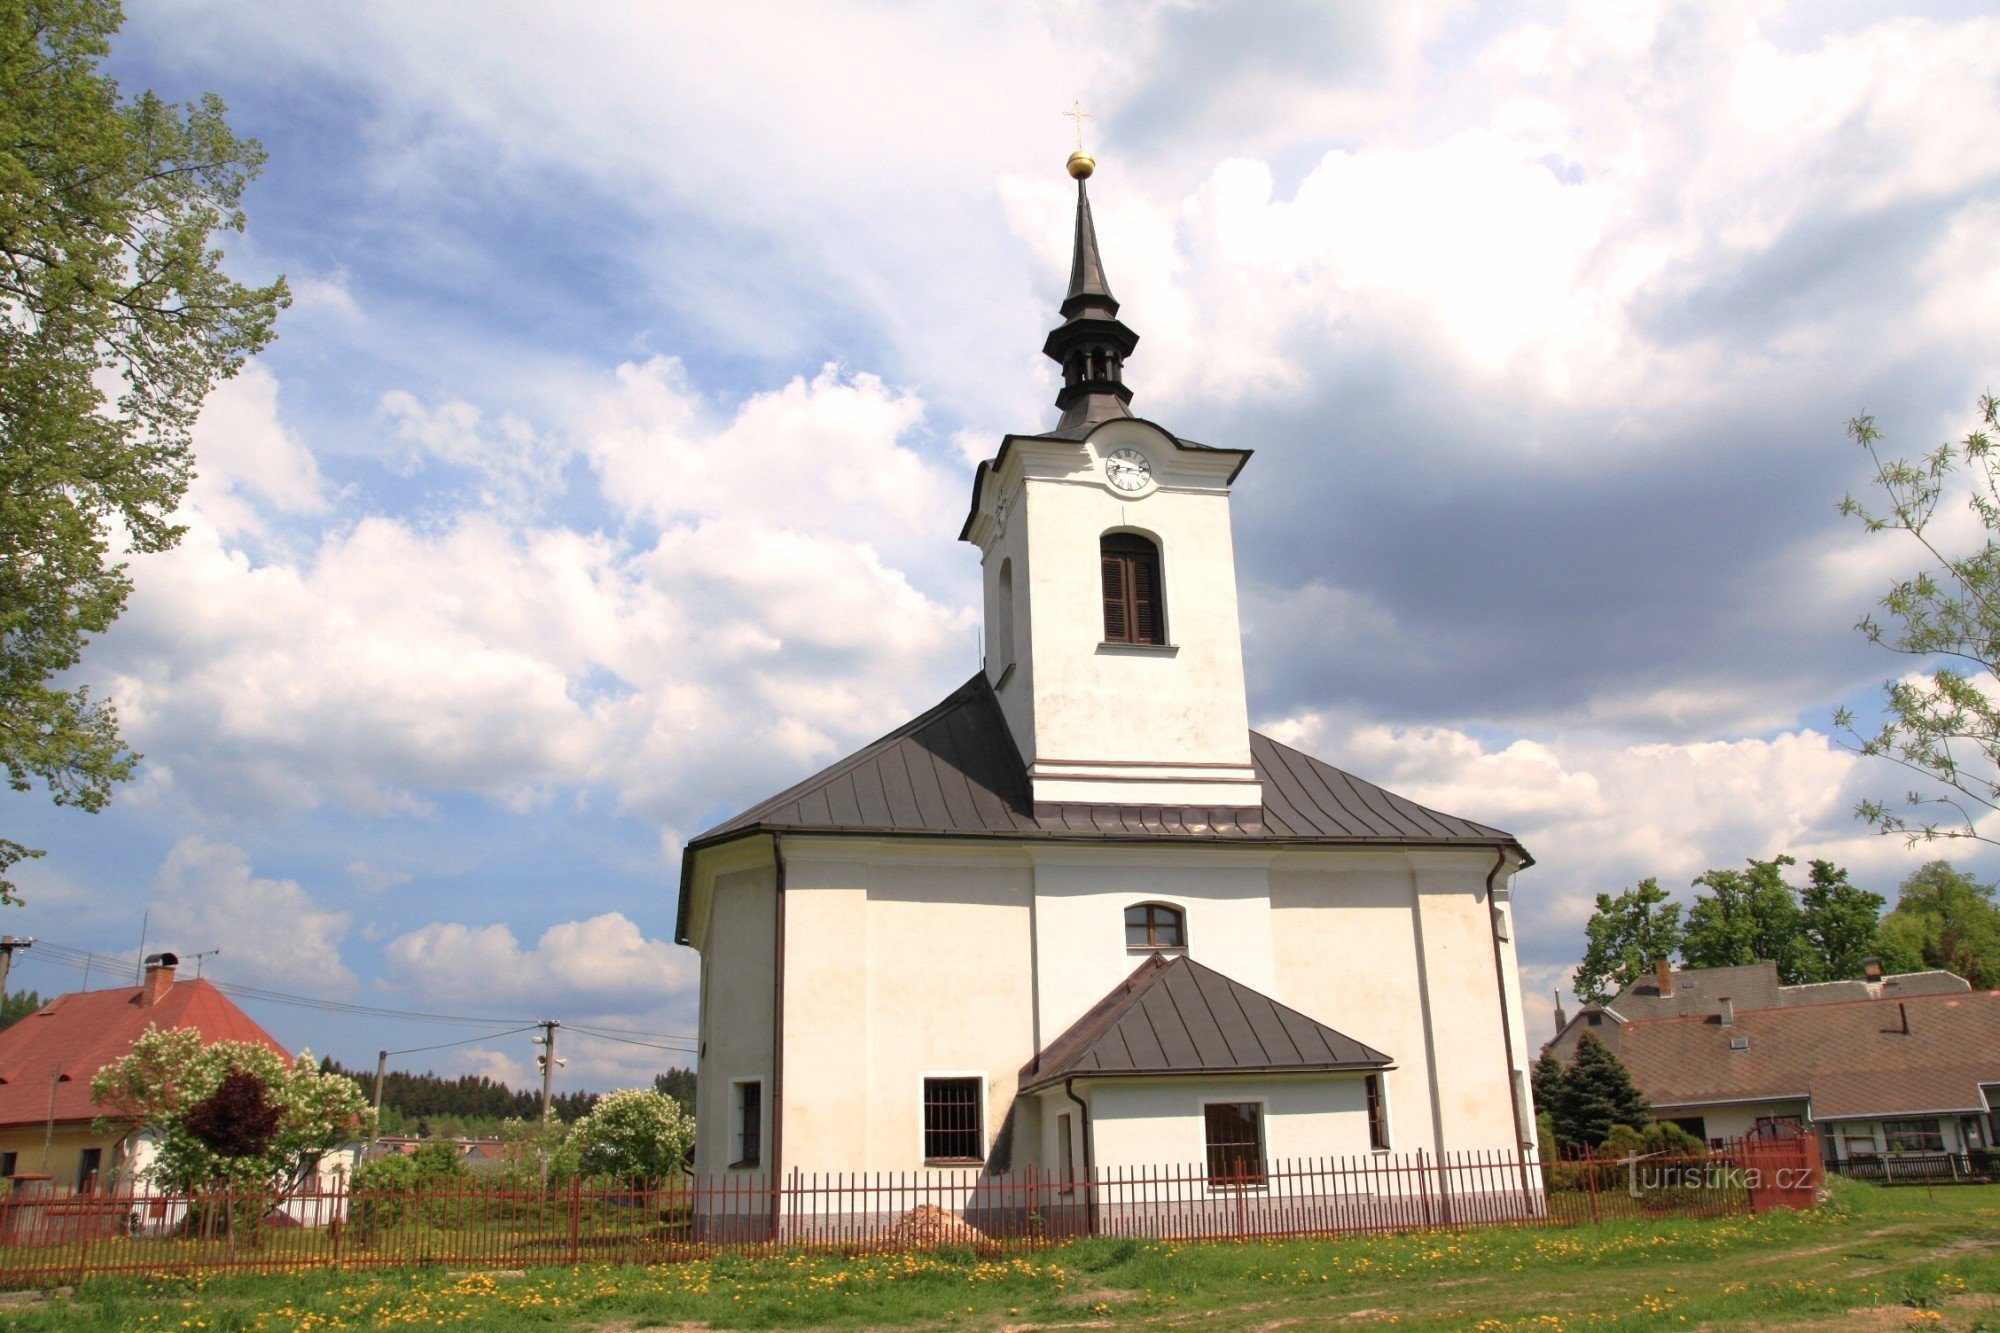 Vojnův Městec - Biserica Sf. Andrew